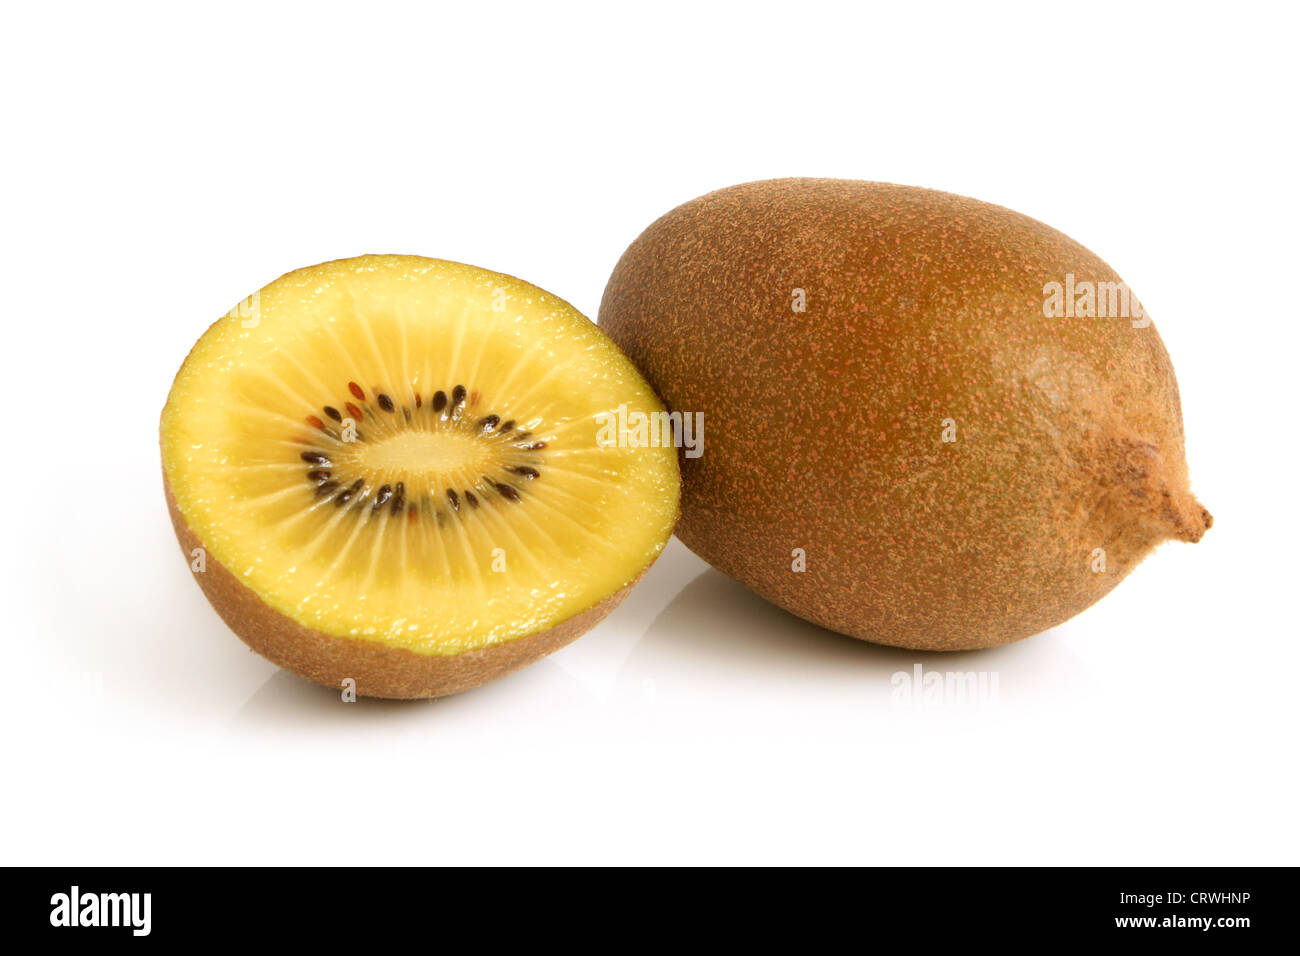 Gold kiwi fruit Stock Photo